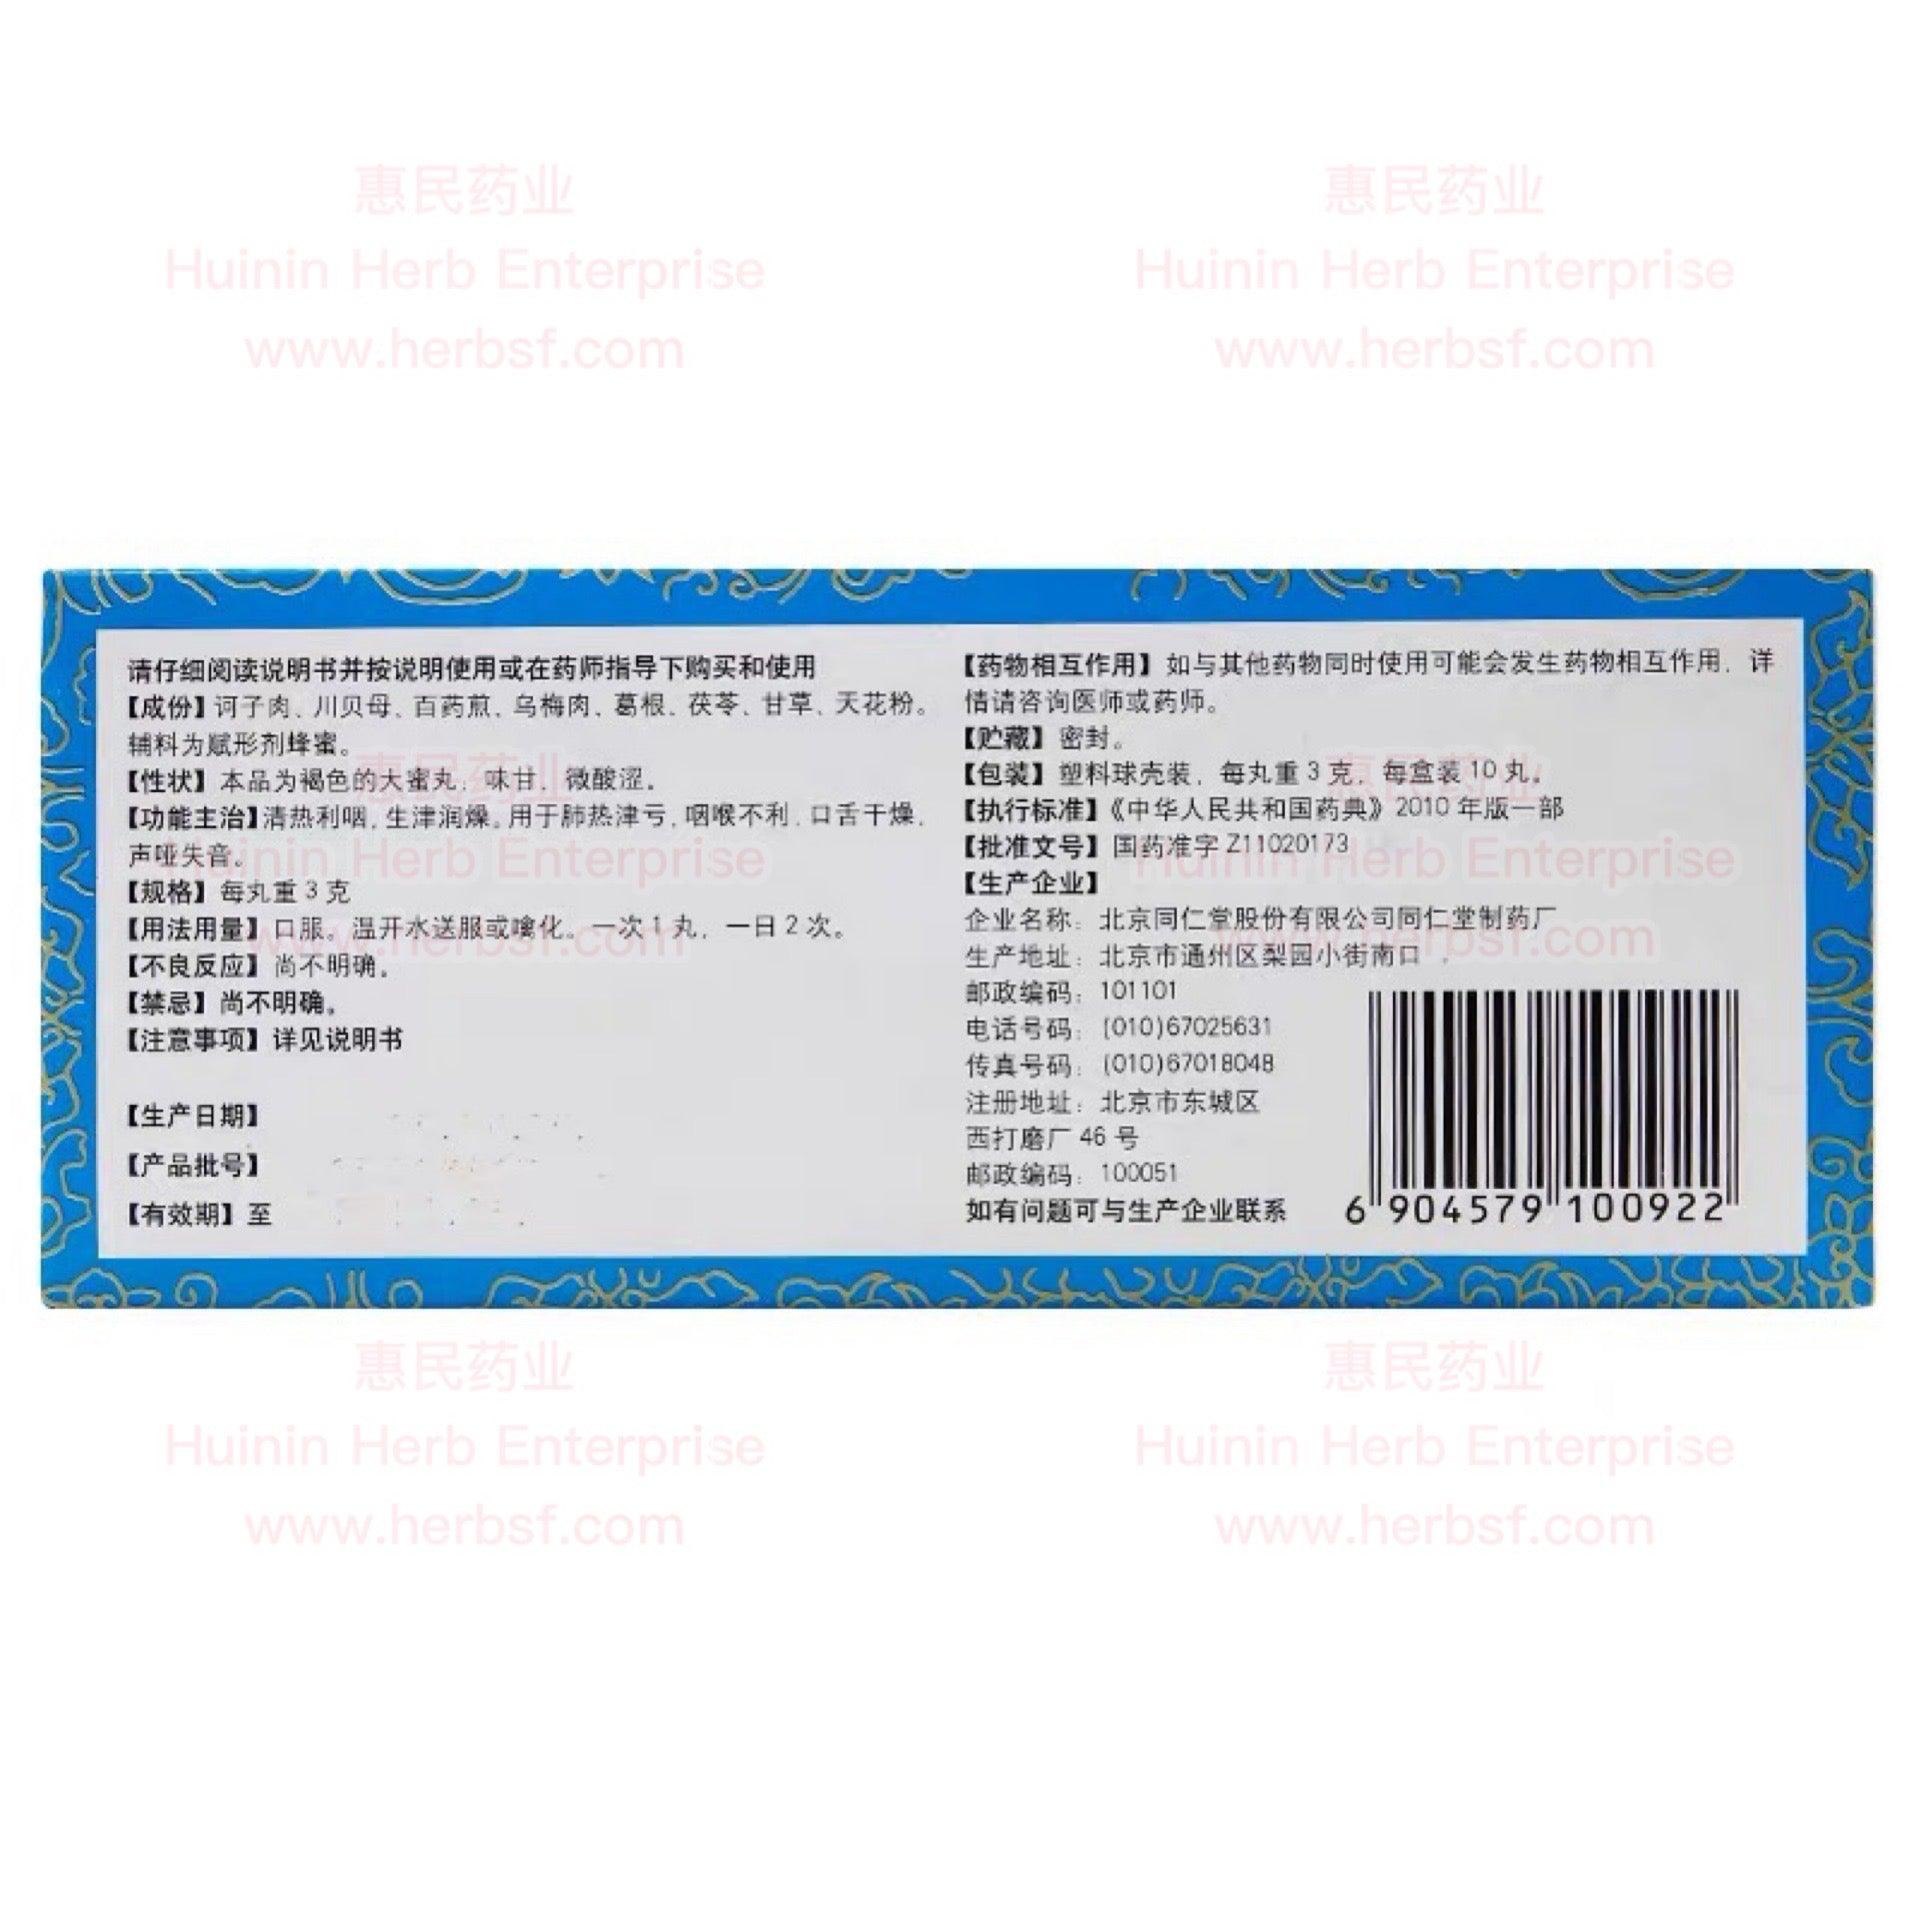 Qing Yin Wan (10 Pills) - Huimin Herb Online, LLC